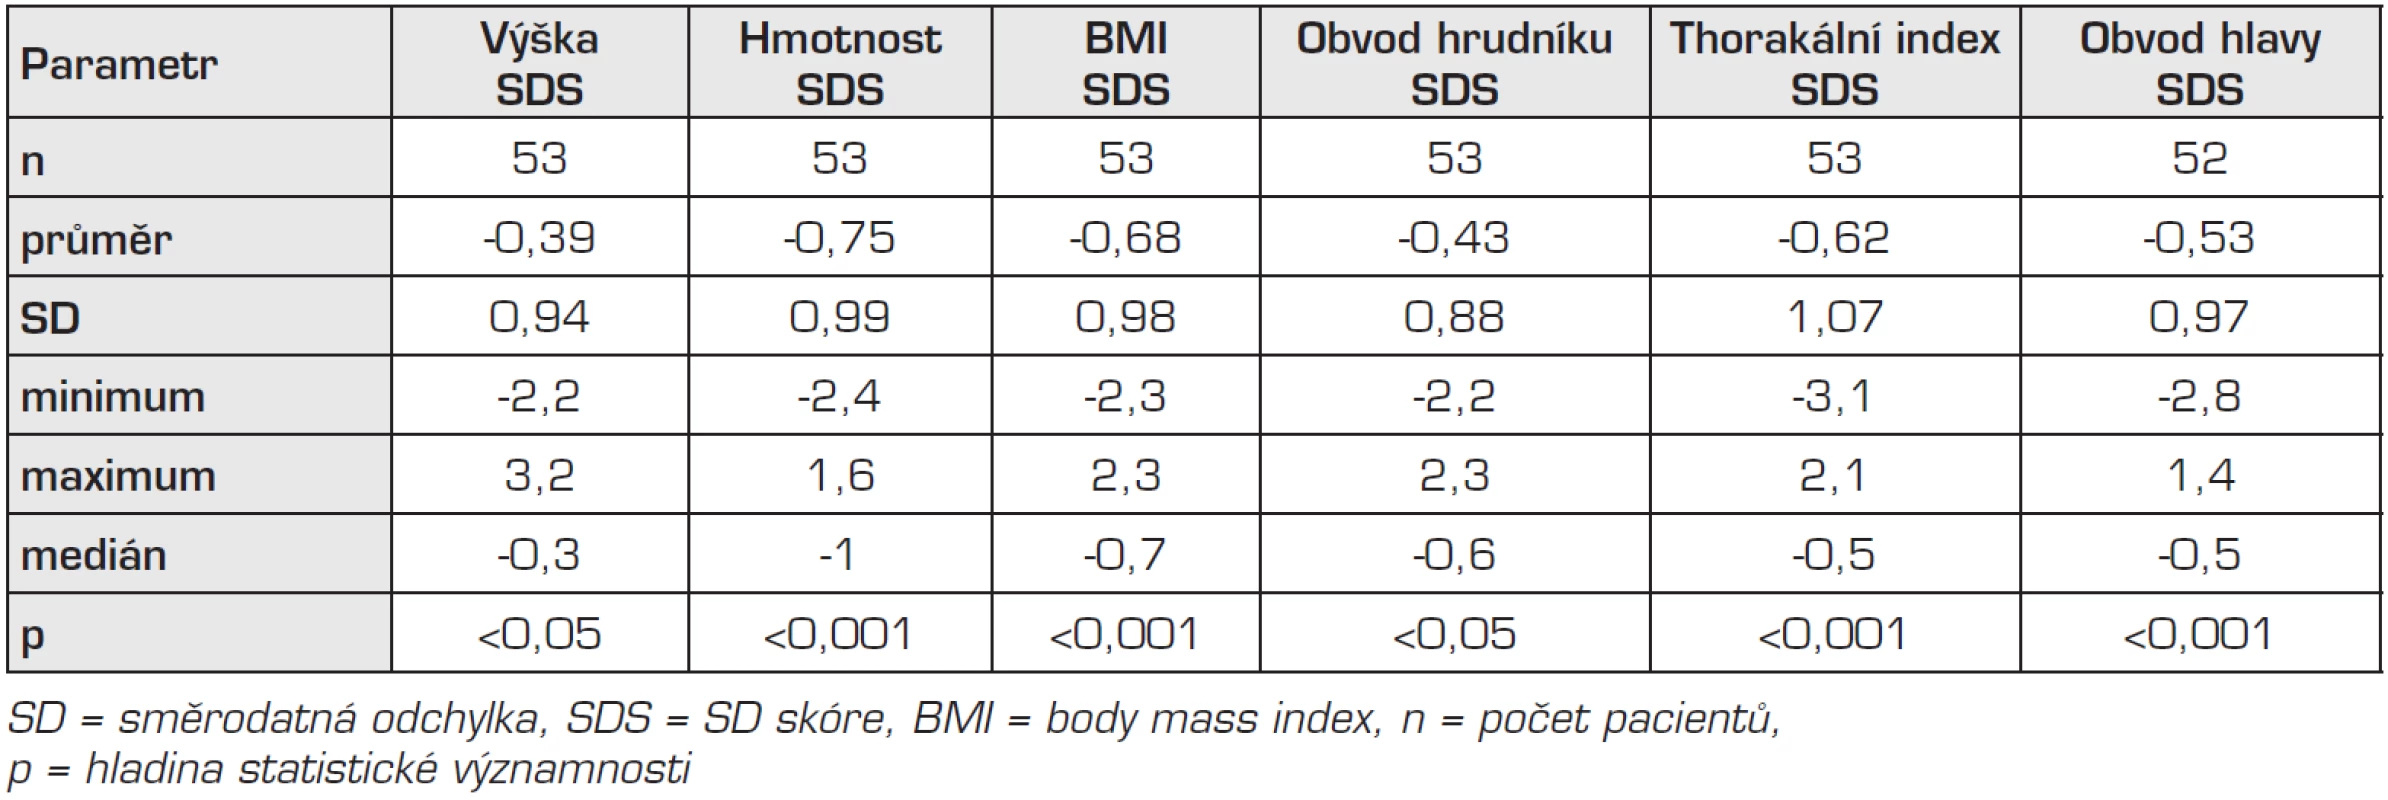 Výsledky antropometrického měření, srovnání s českými standardy.